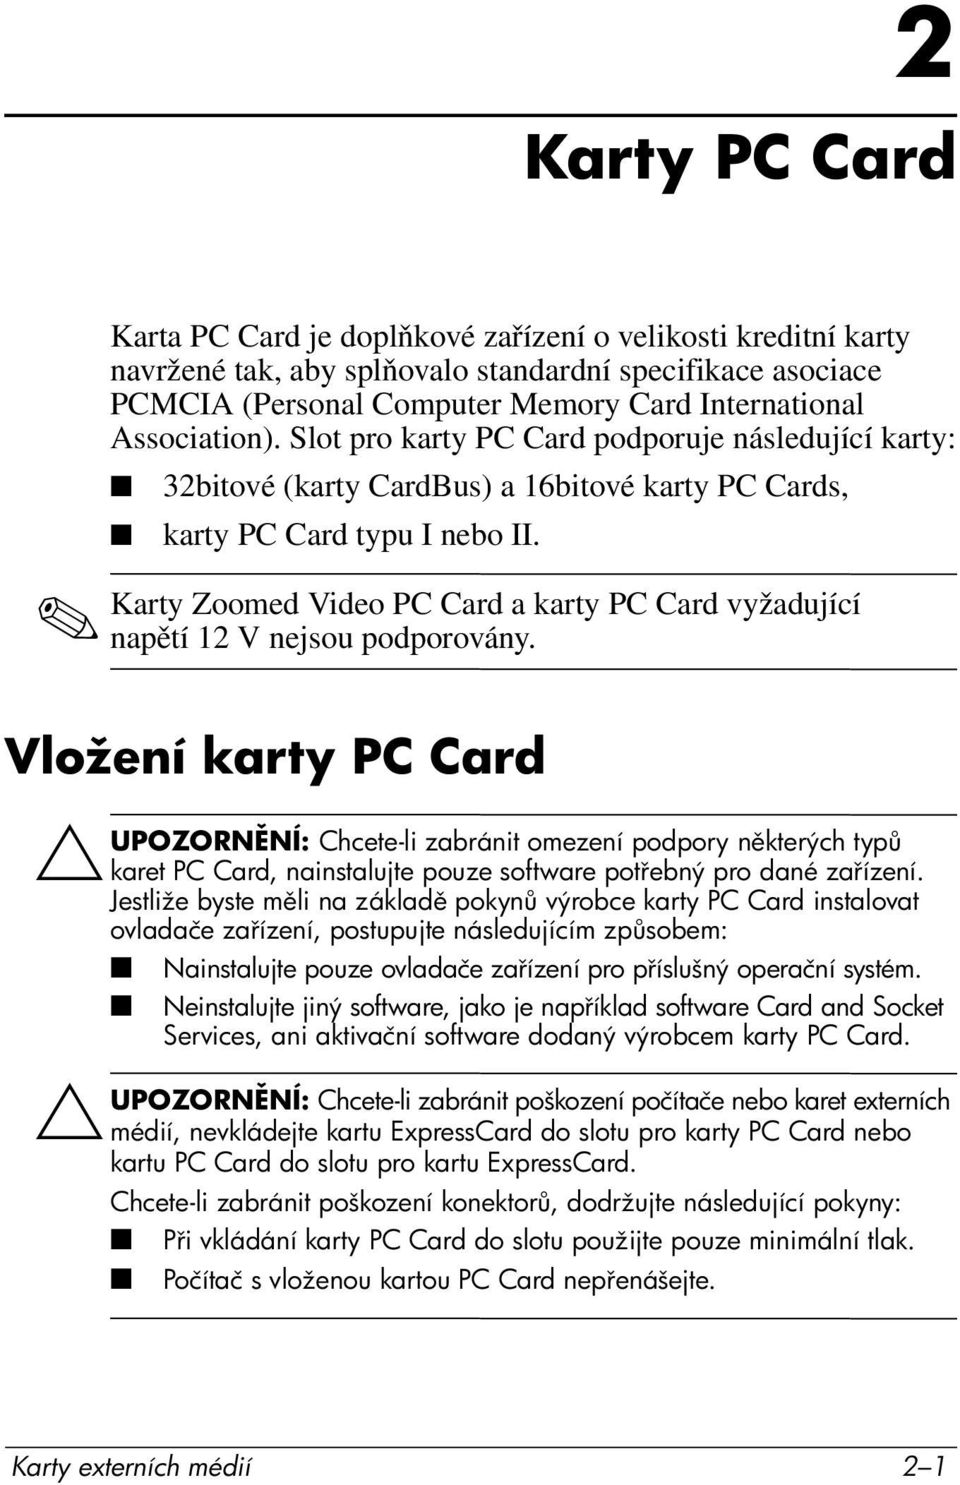 Karty Zoomed Video PC Card a karty PC Card vyžadující napětí 12 V nejsou podporovány.